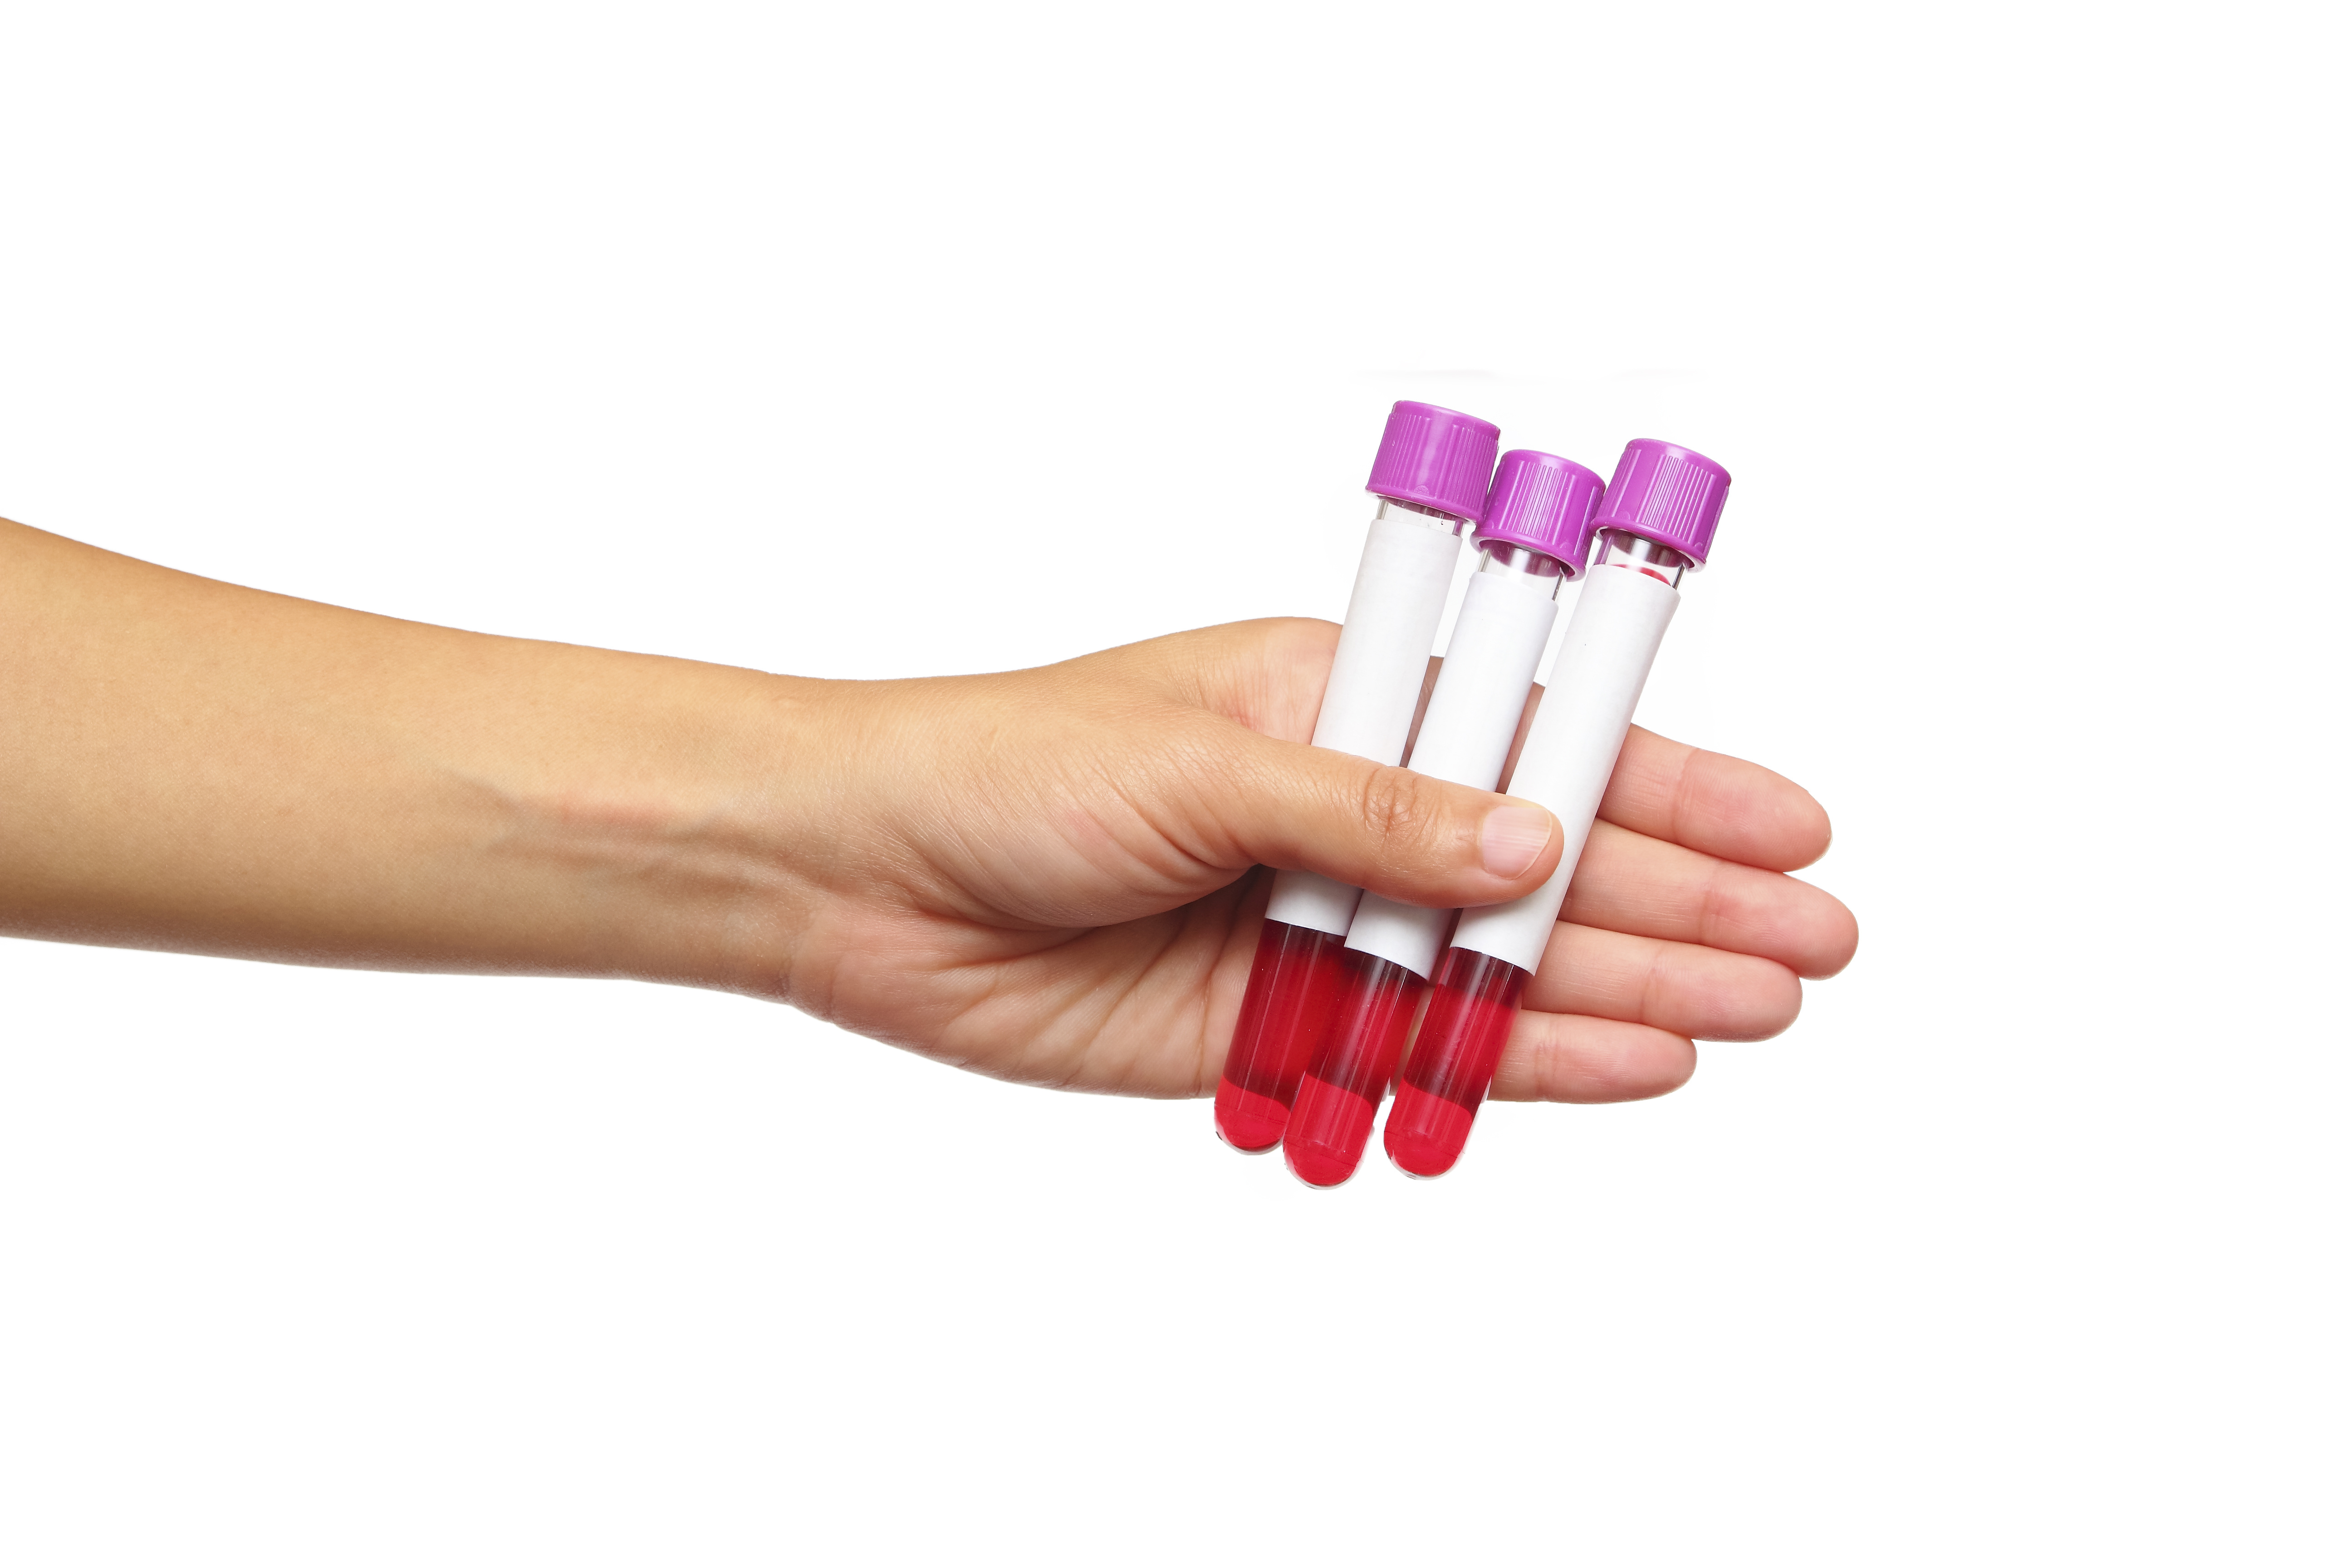 Gentest for FH blant familiemedlemmer kan tas ved en enkel blodprøve hos fastlegen. Bilde: Adobe Stock